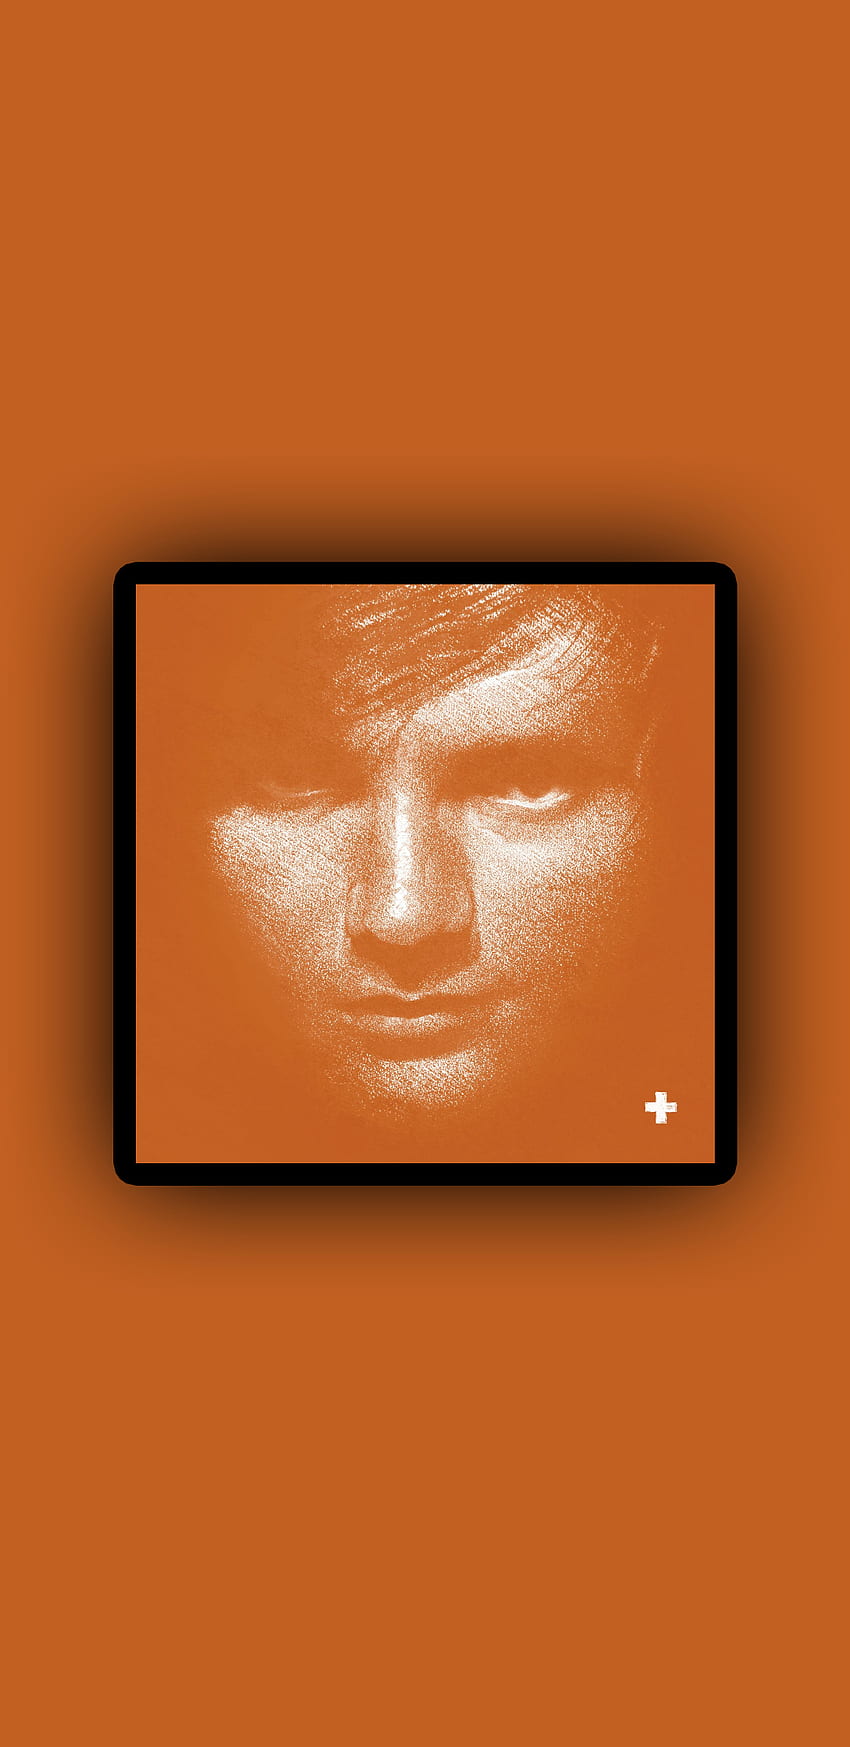 Ed Sheeran +, Pop, Ed Sheeran, Singer, Music, UK, Album, Plus, Orange HD phone wallpaper